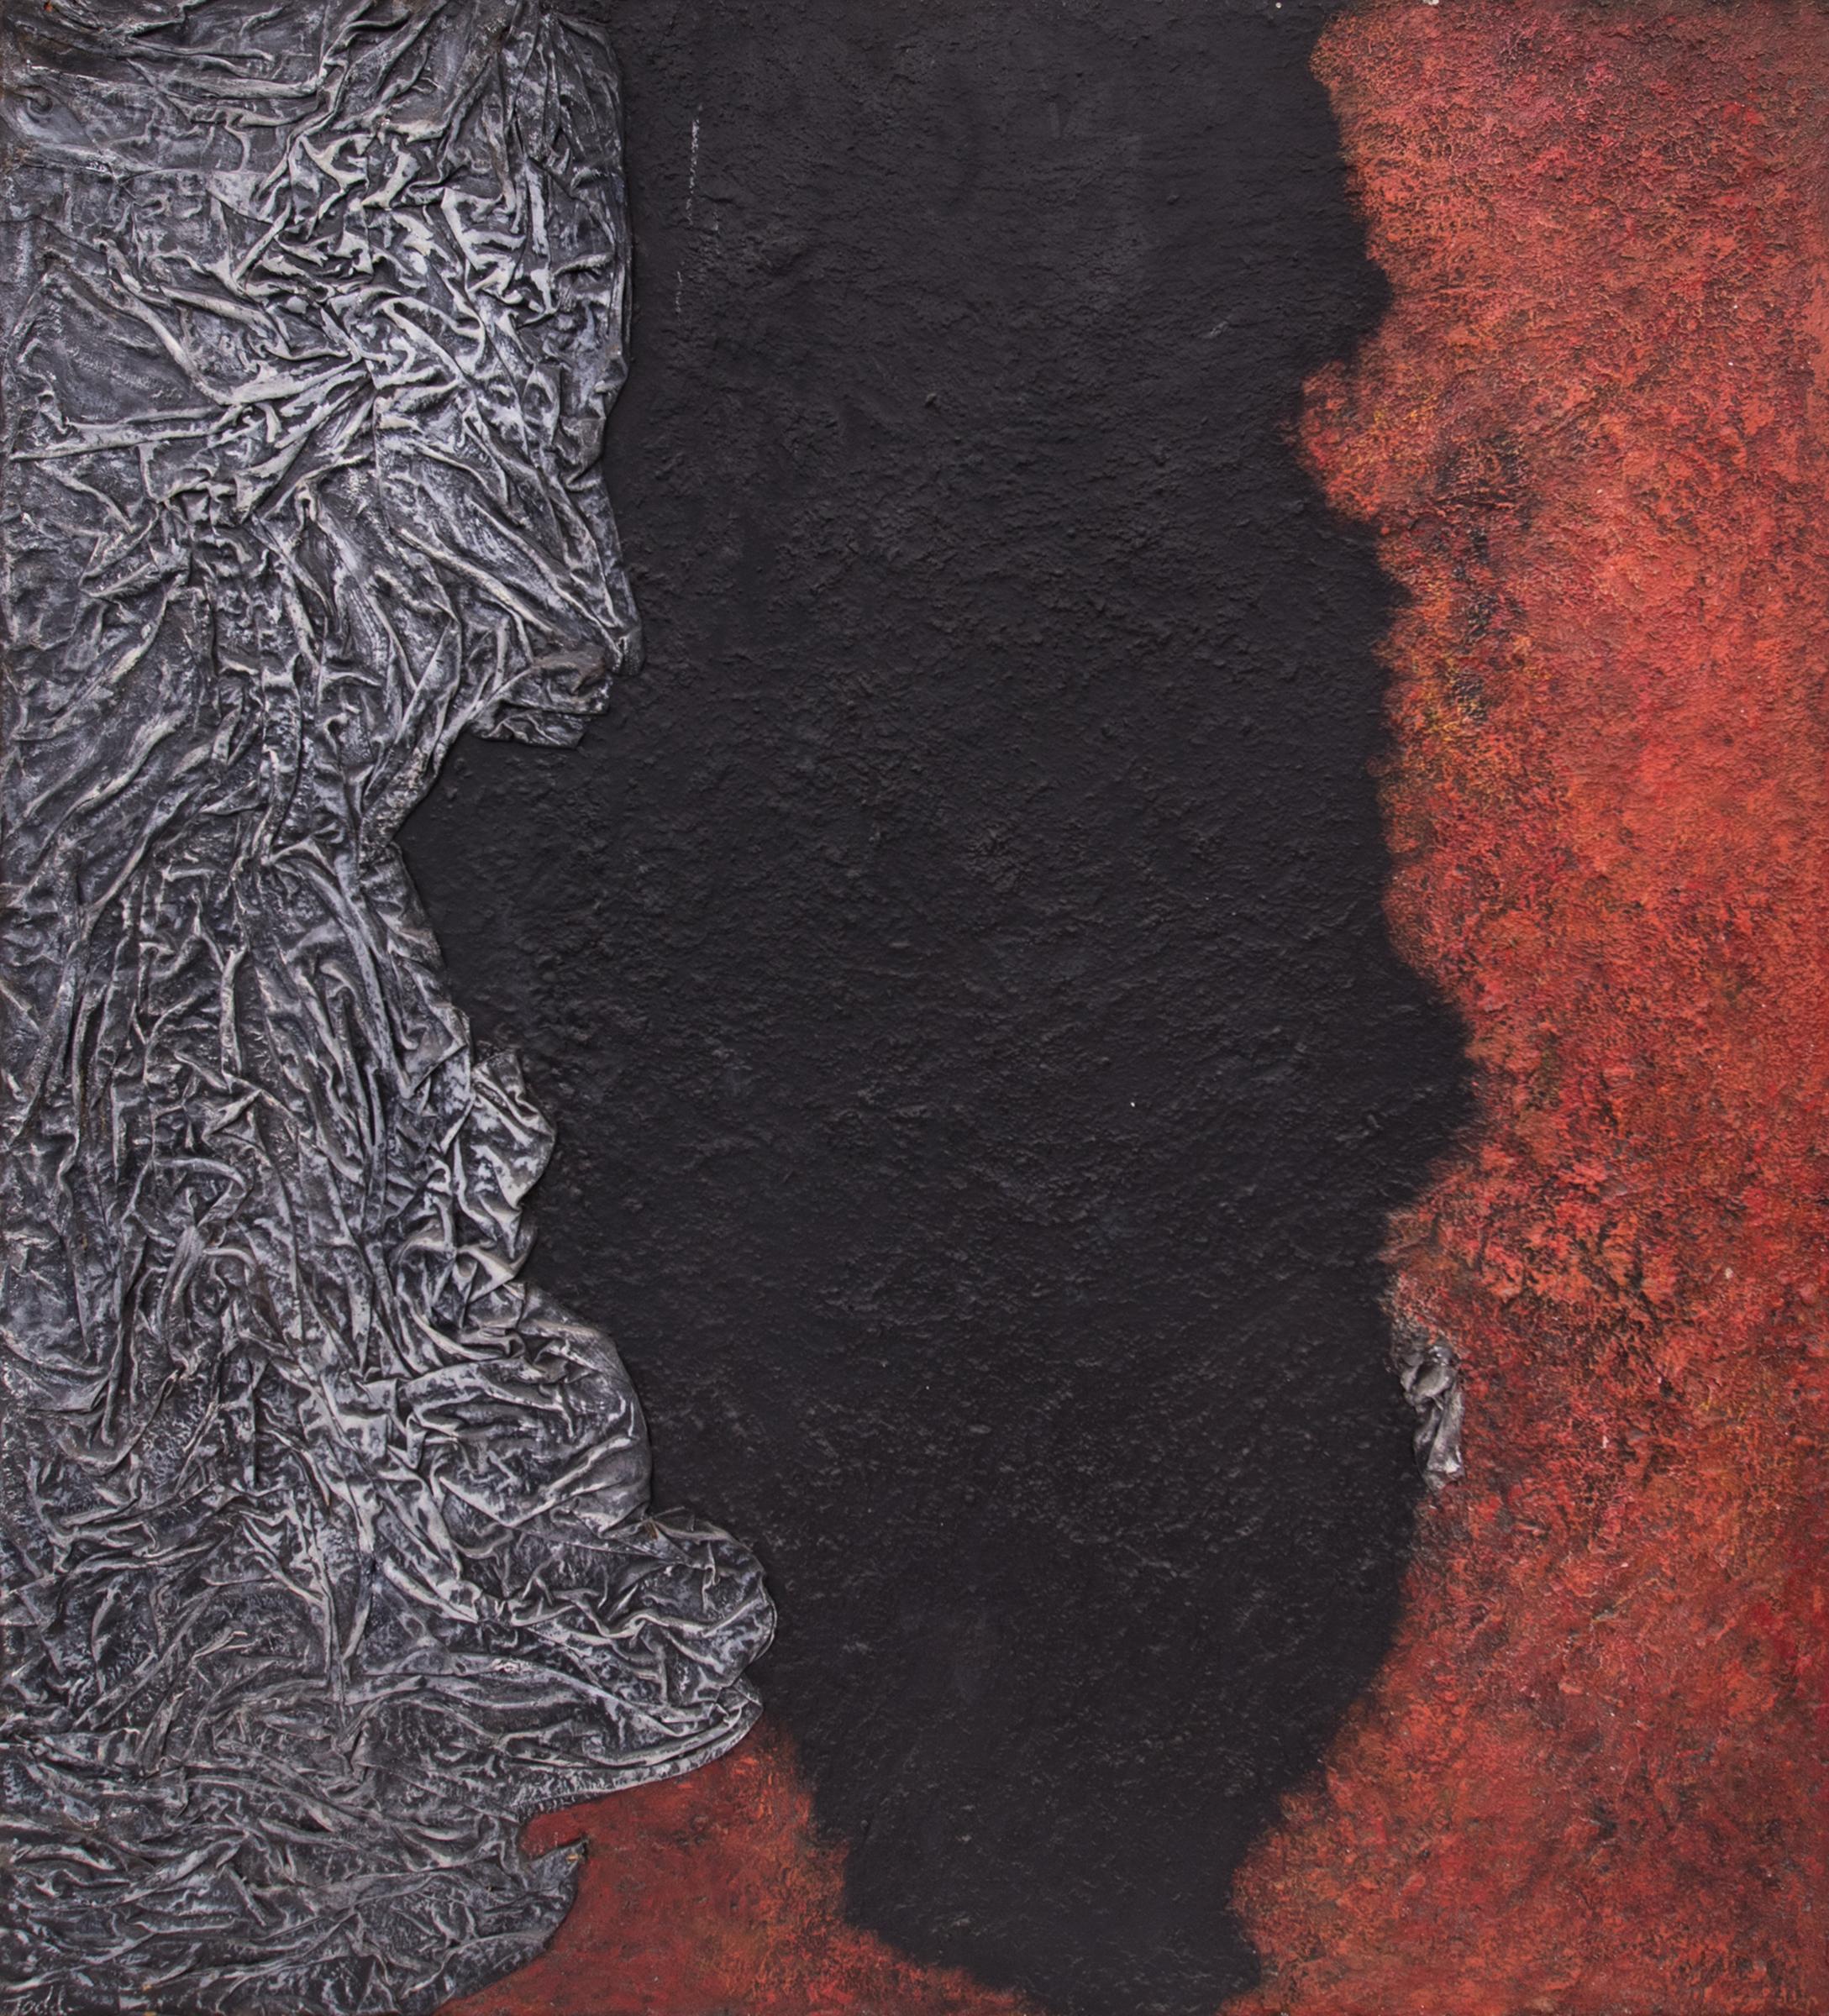 Evolution der Götter (Abstraktes Gemälde in Rot:: Schwarz:: Grau und Weiß) – Painting von Ruth Todd